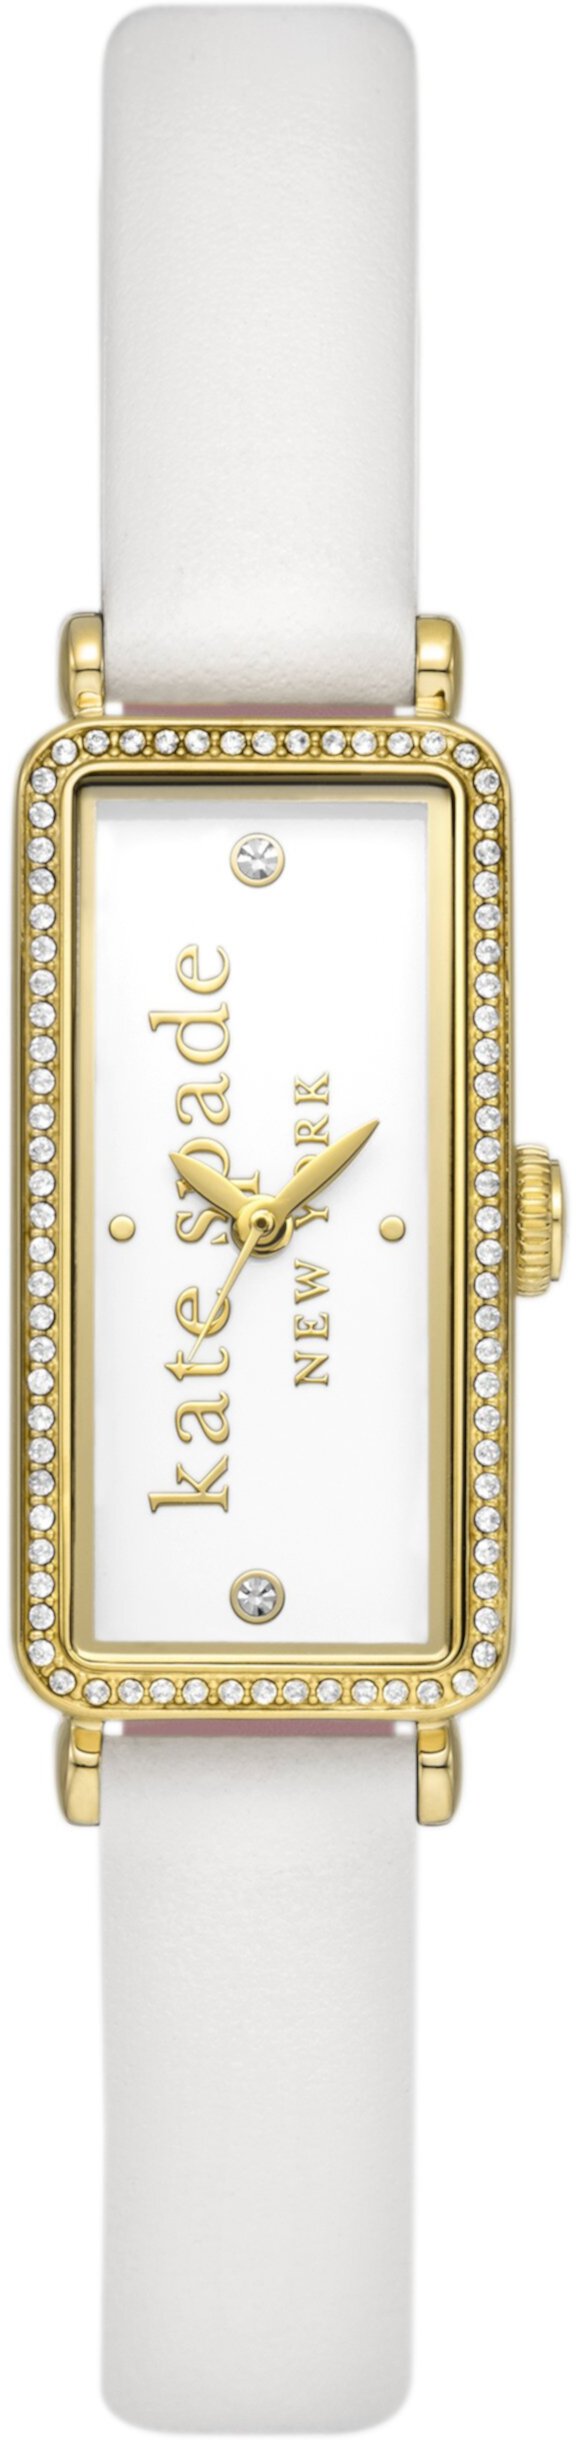 Белые кожаные часы Rosedale - KSW1818 Kate Spade New York